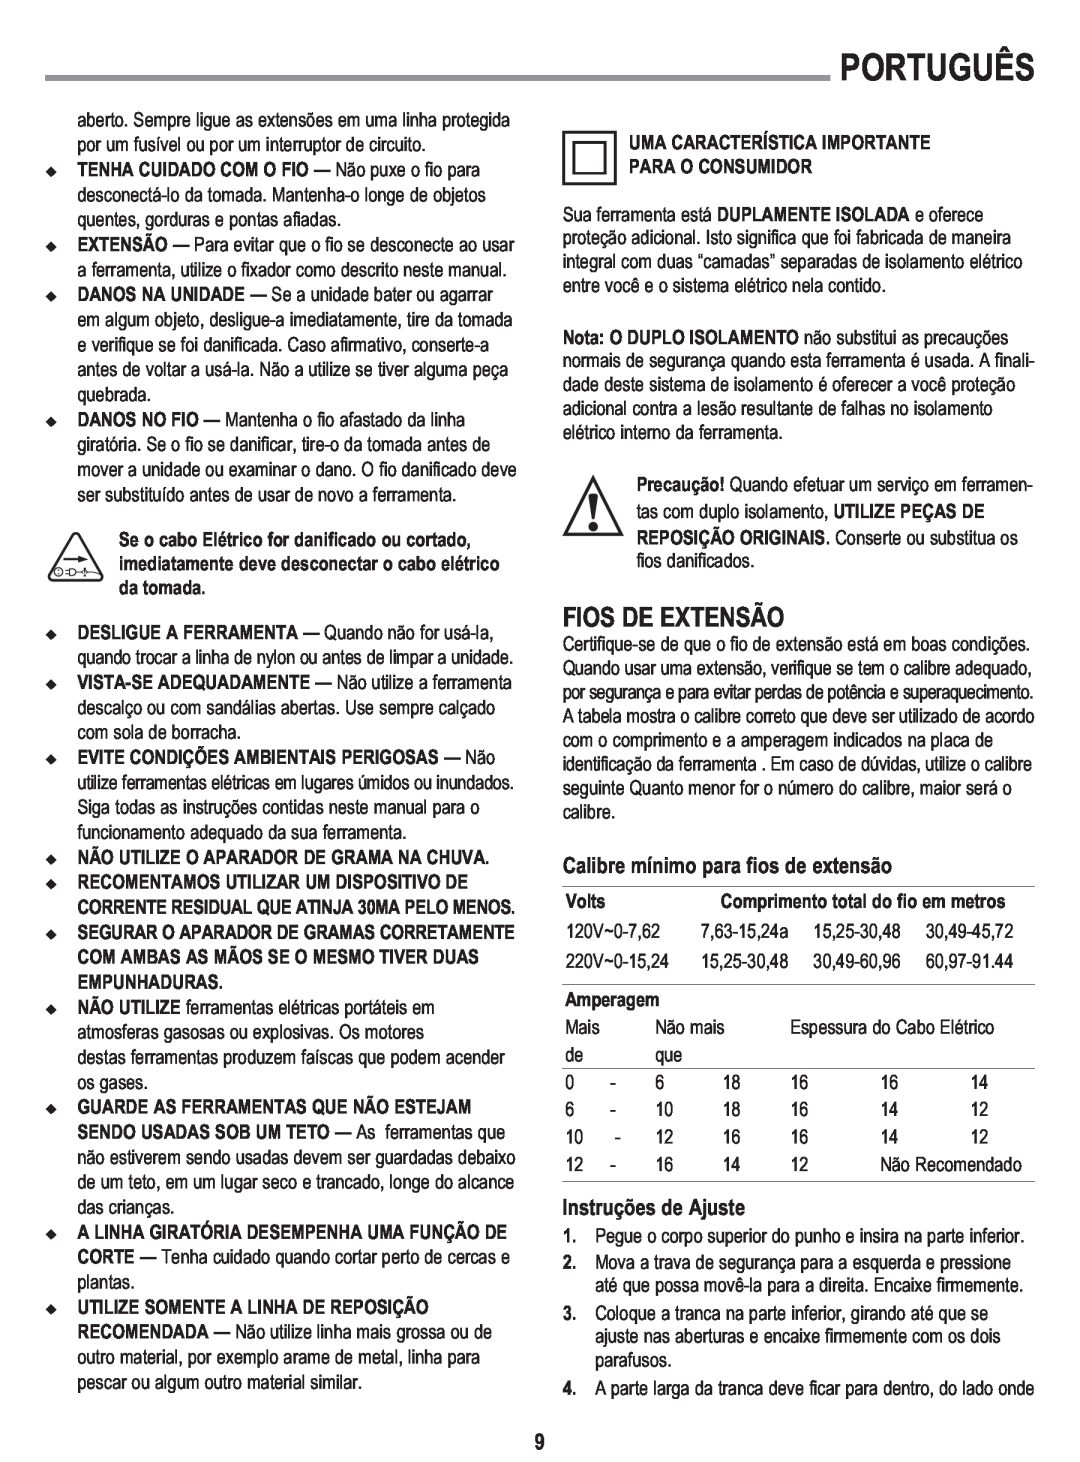 Black & Decker GL300 Fios De Extensão, Calibre mínimo para fios de extensão, Instruções de Ajuste, Português 